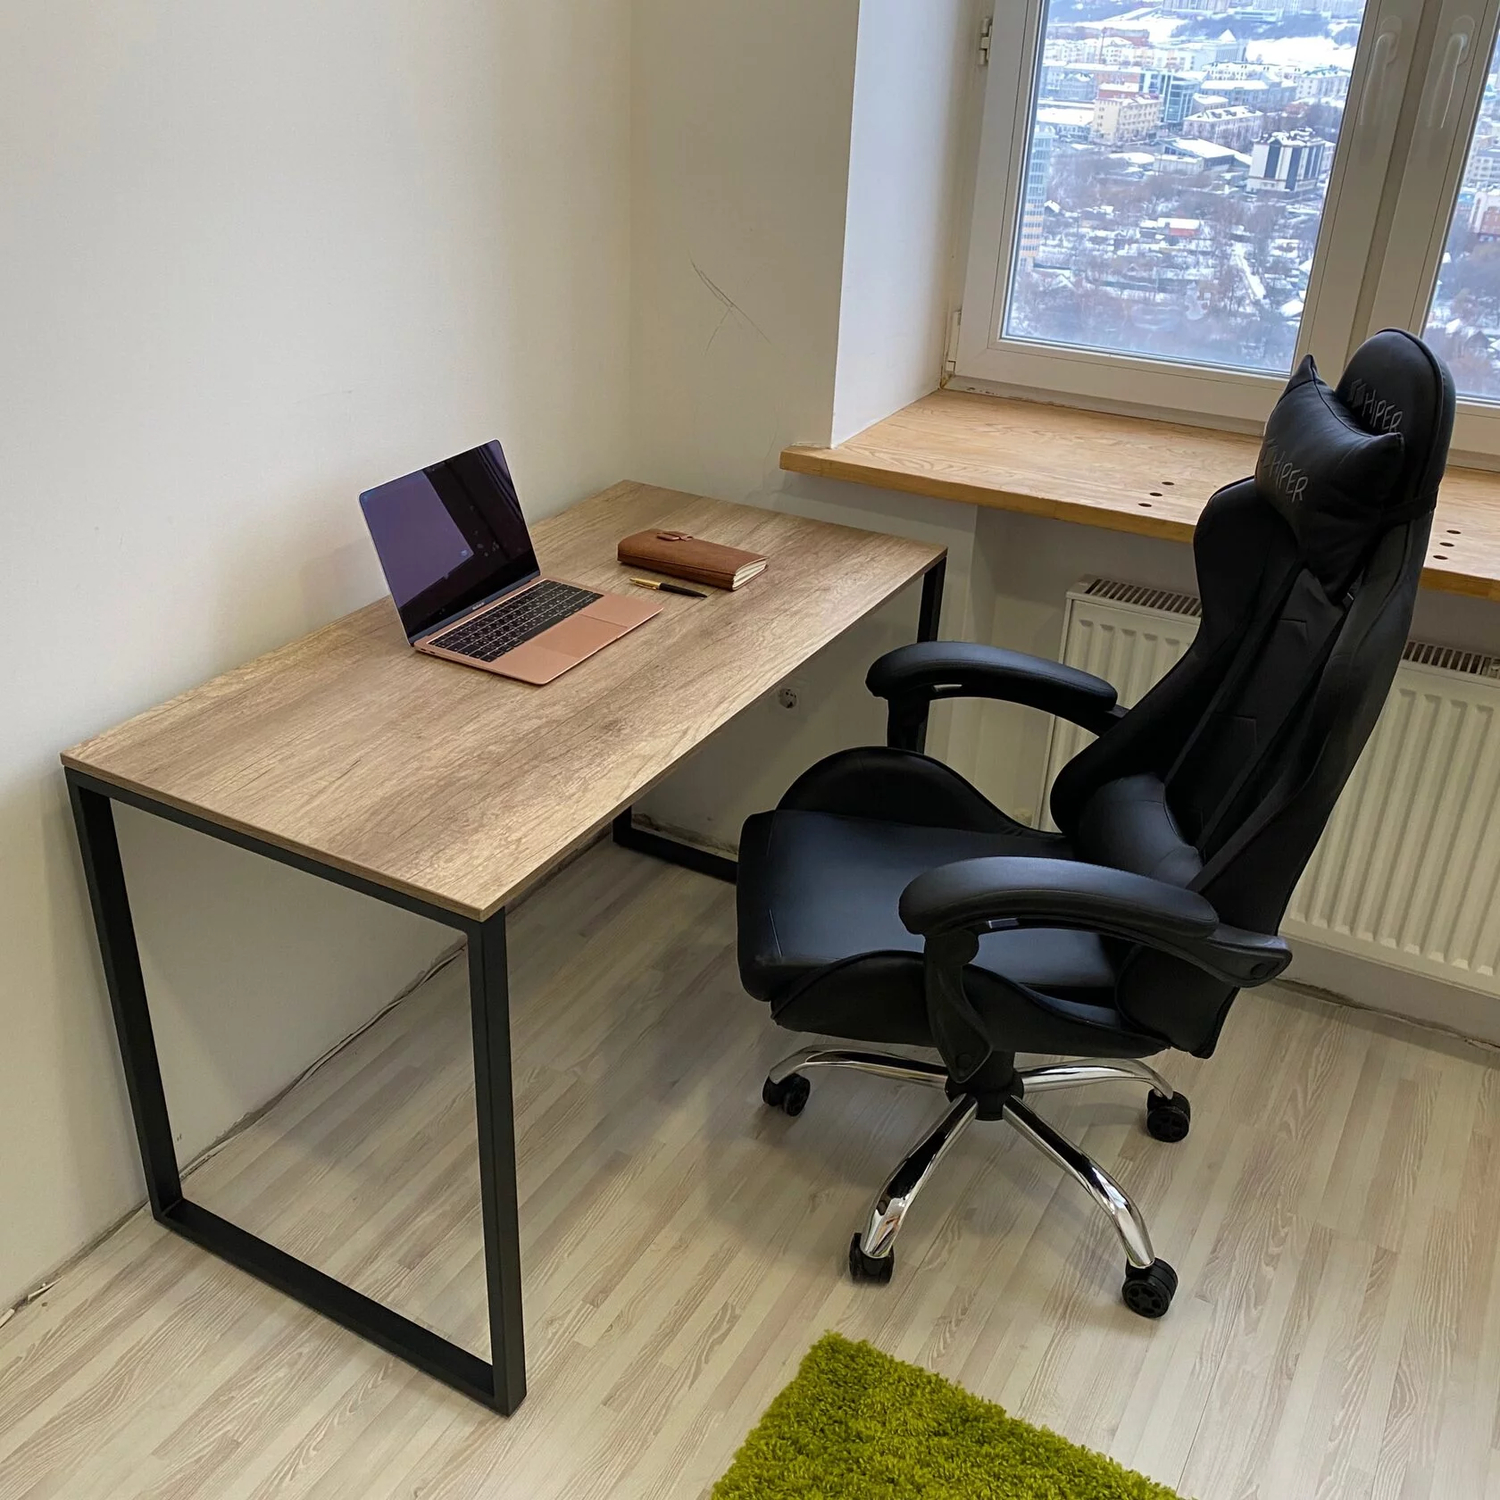 Недорогой письменный стол в стиле лофт для рабочего кабинета